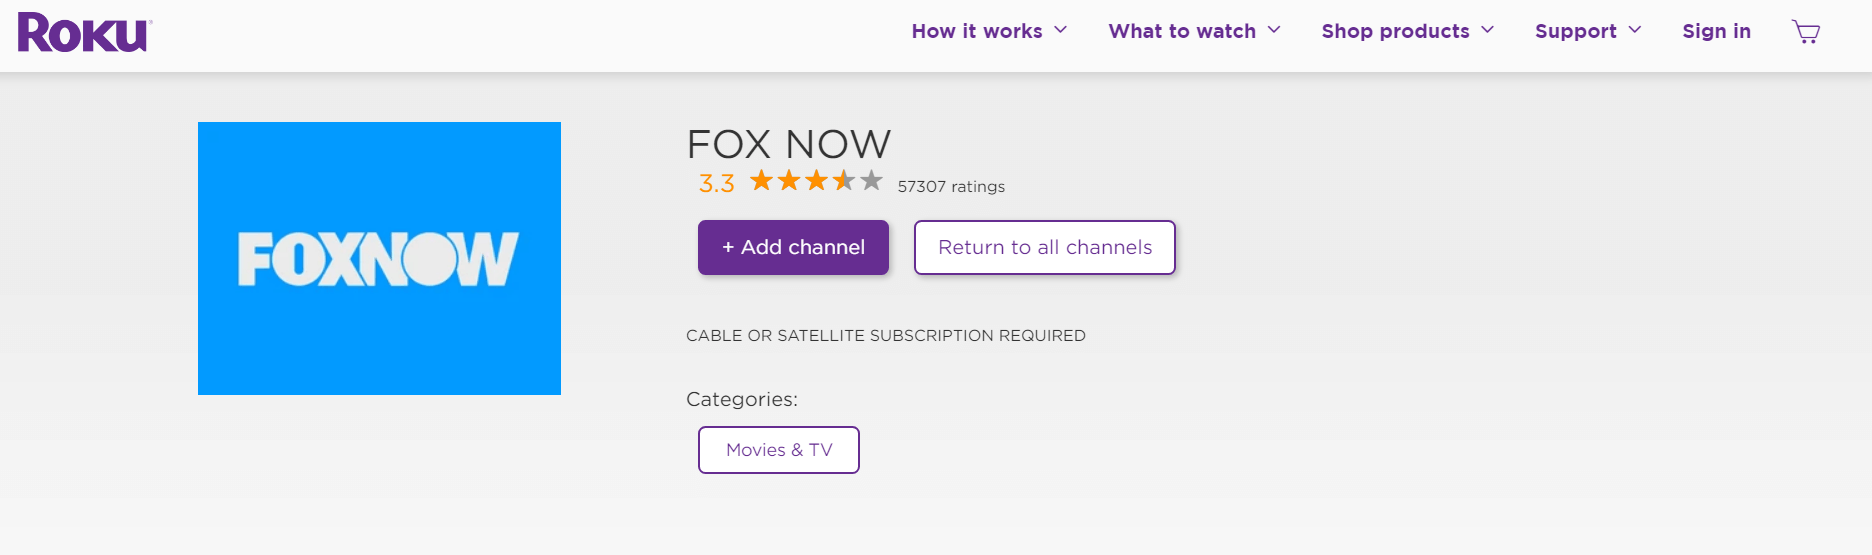 fox-now-app-on-roku-outside-USA